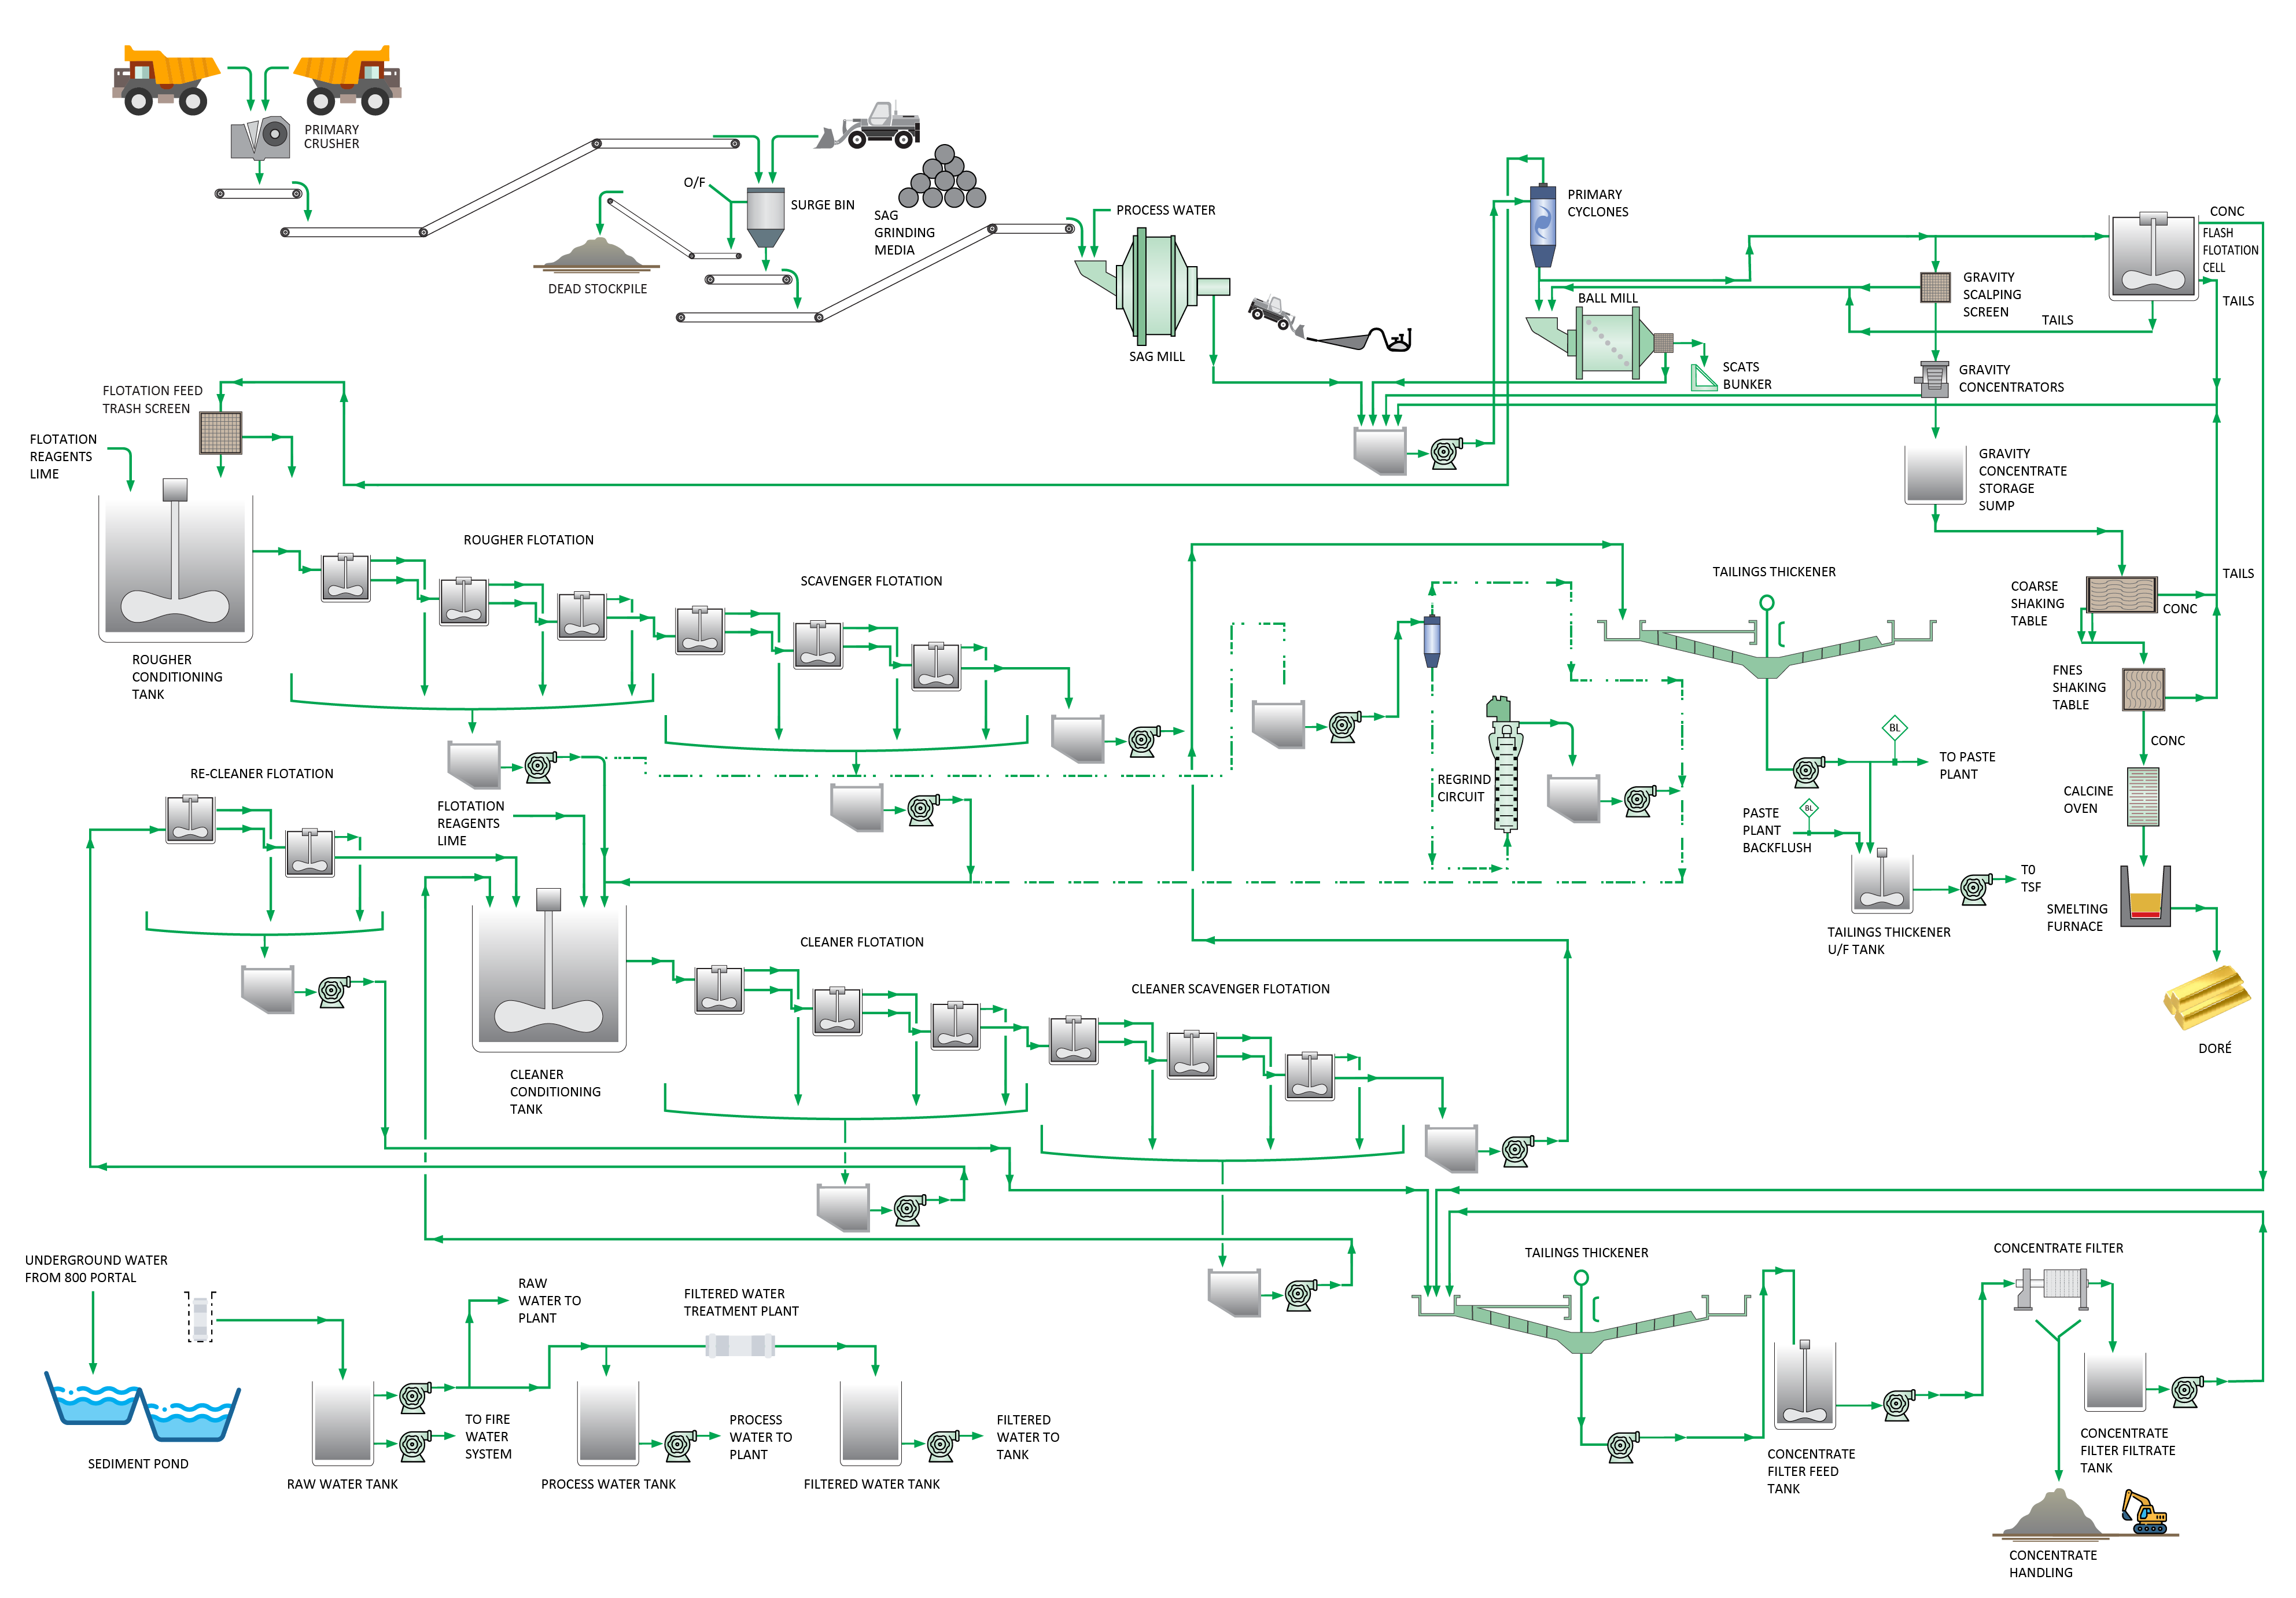 Figure 1.2 – DFS 1.2 mtpa Process Plant Flowsheet